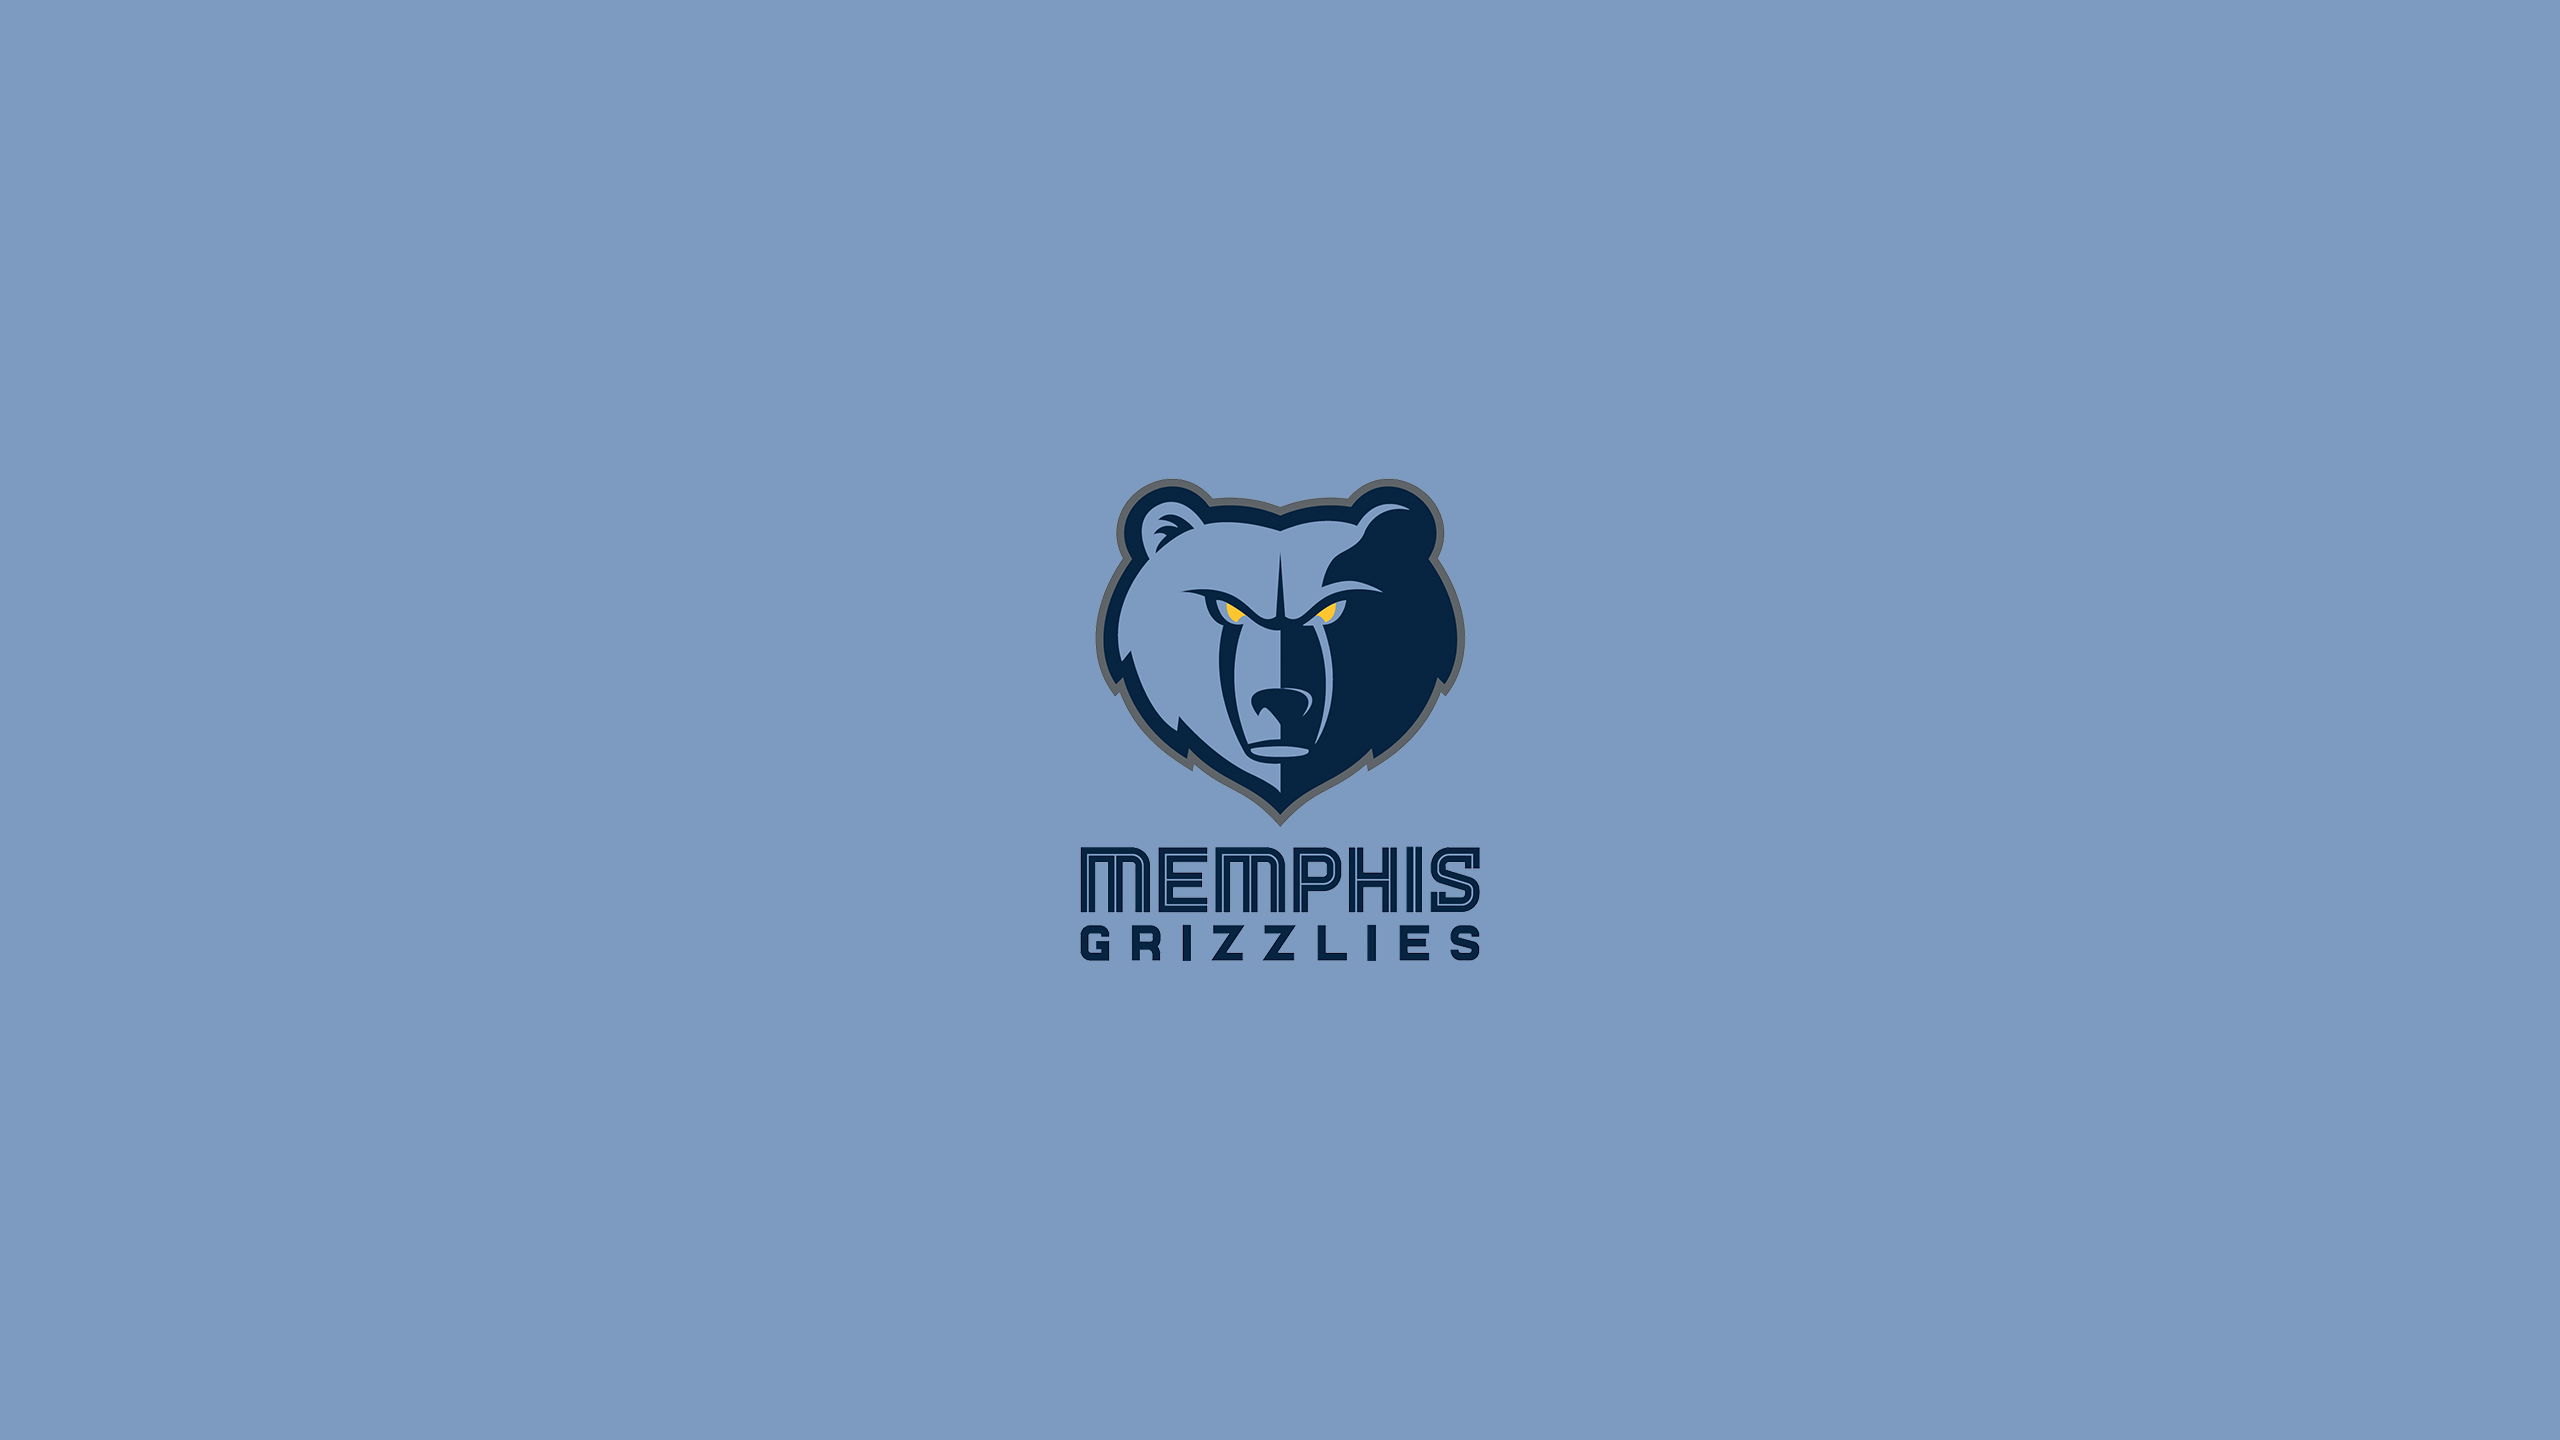 Memphis Grizzlies 4k Ultra HD Wallpaper by Michael Tipton